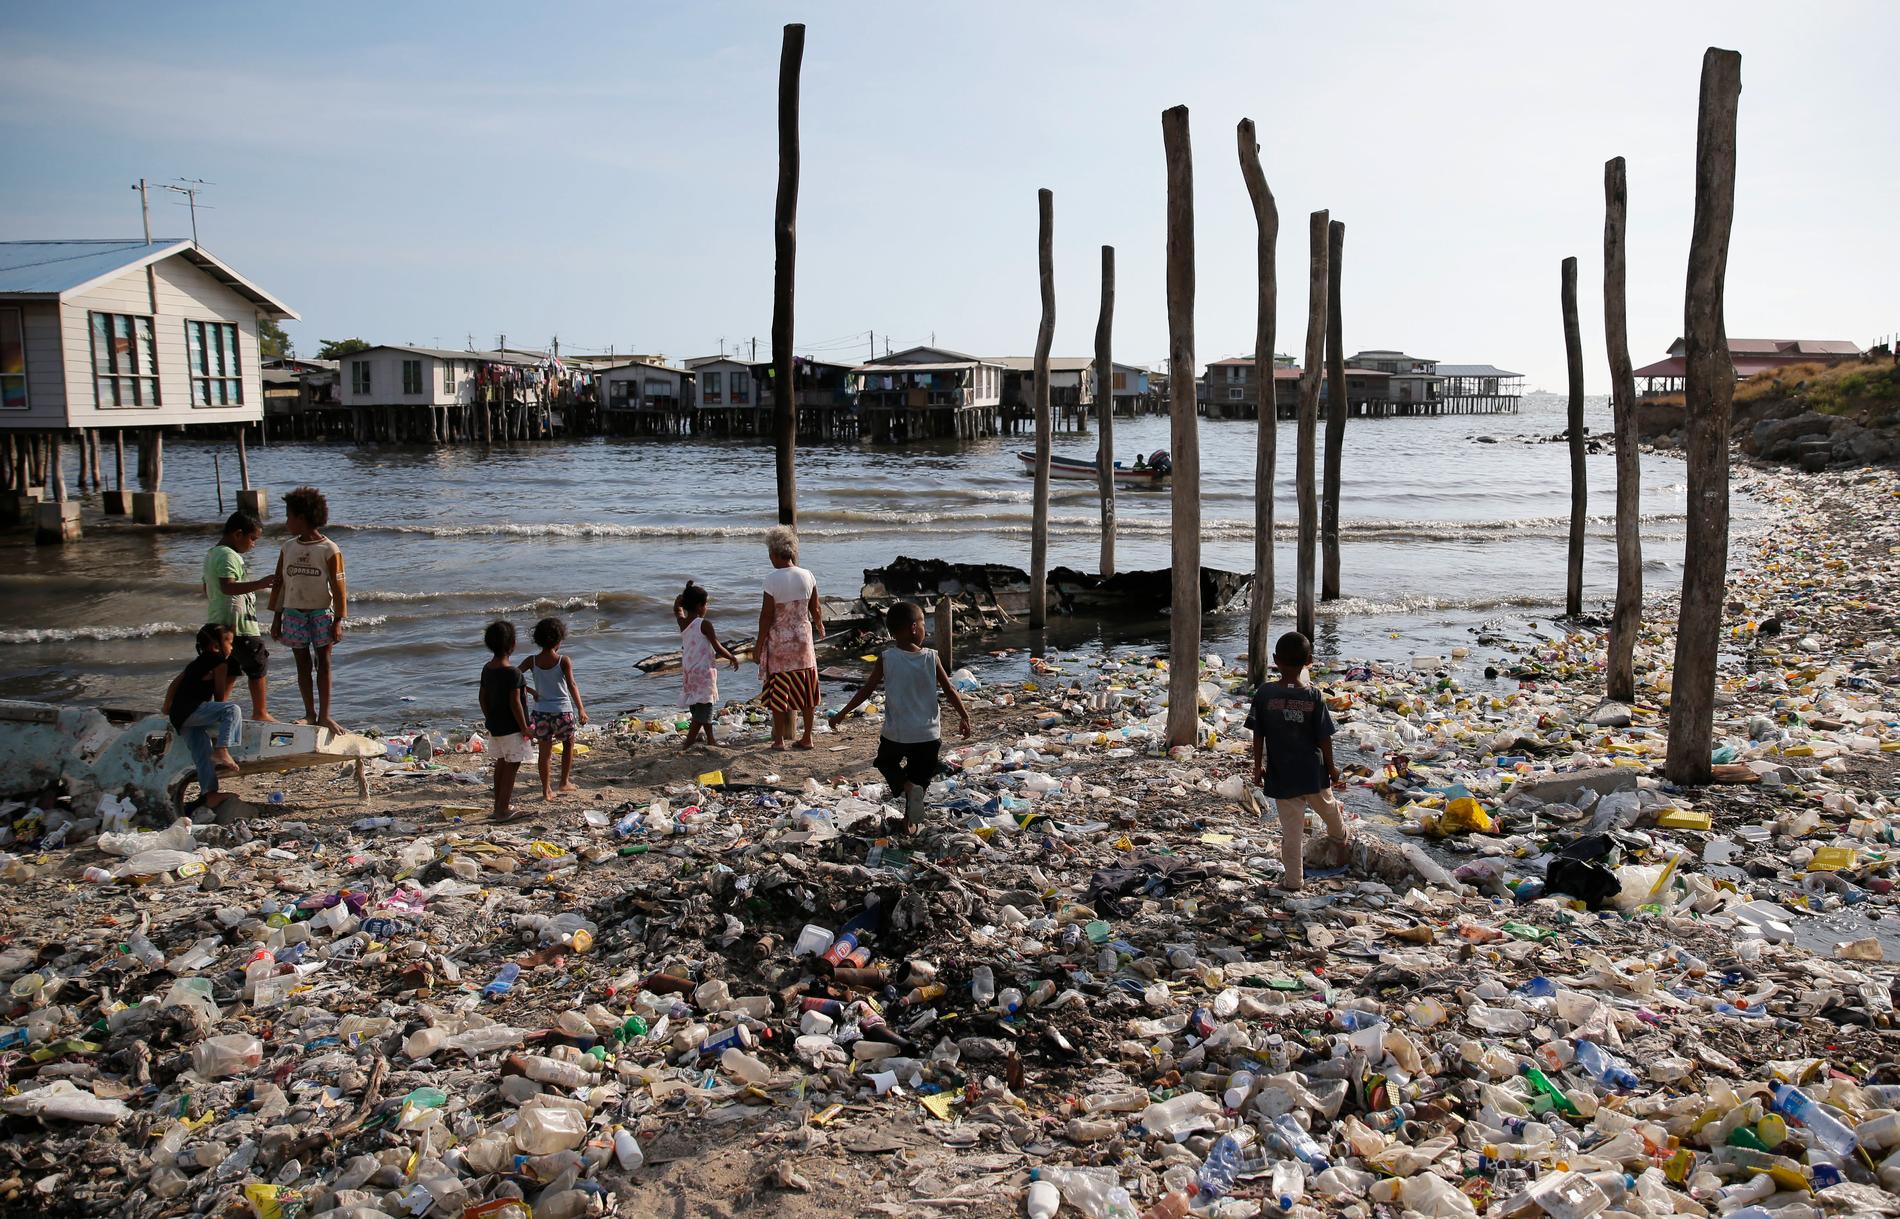 Plasten som hamnar i haven kan transporteras långt med hjälp av havsströmmar. Det är inte sällan plast transporteras över hela jorden. Bild från Port Moresby på Papua New Guinea.